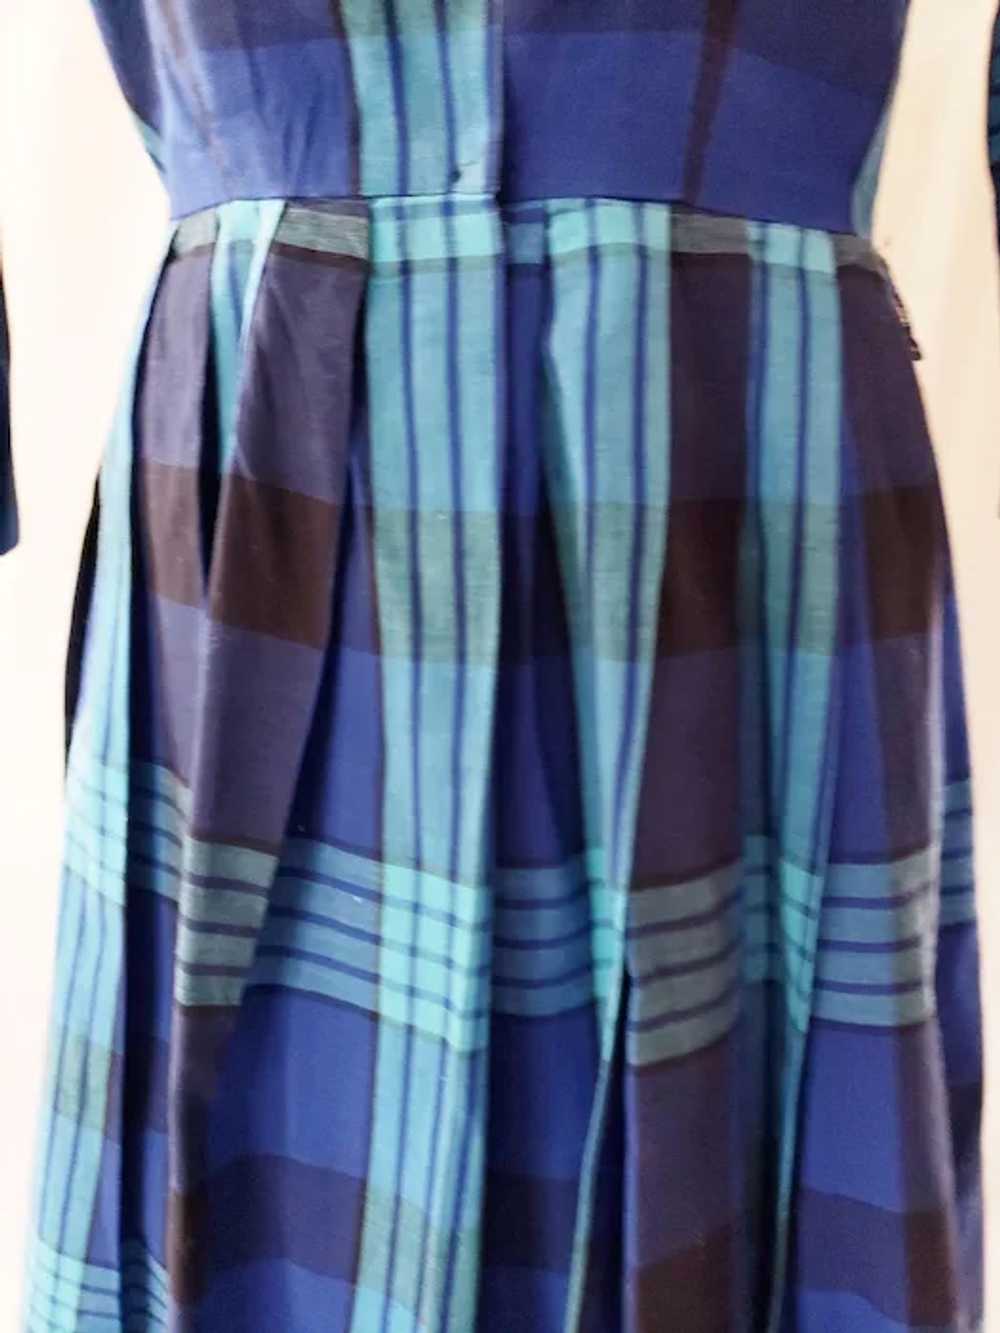 CRISP, BRIGHT Shirtwaist 1960's Dress - image 4